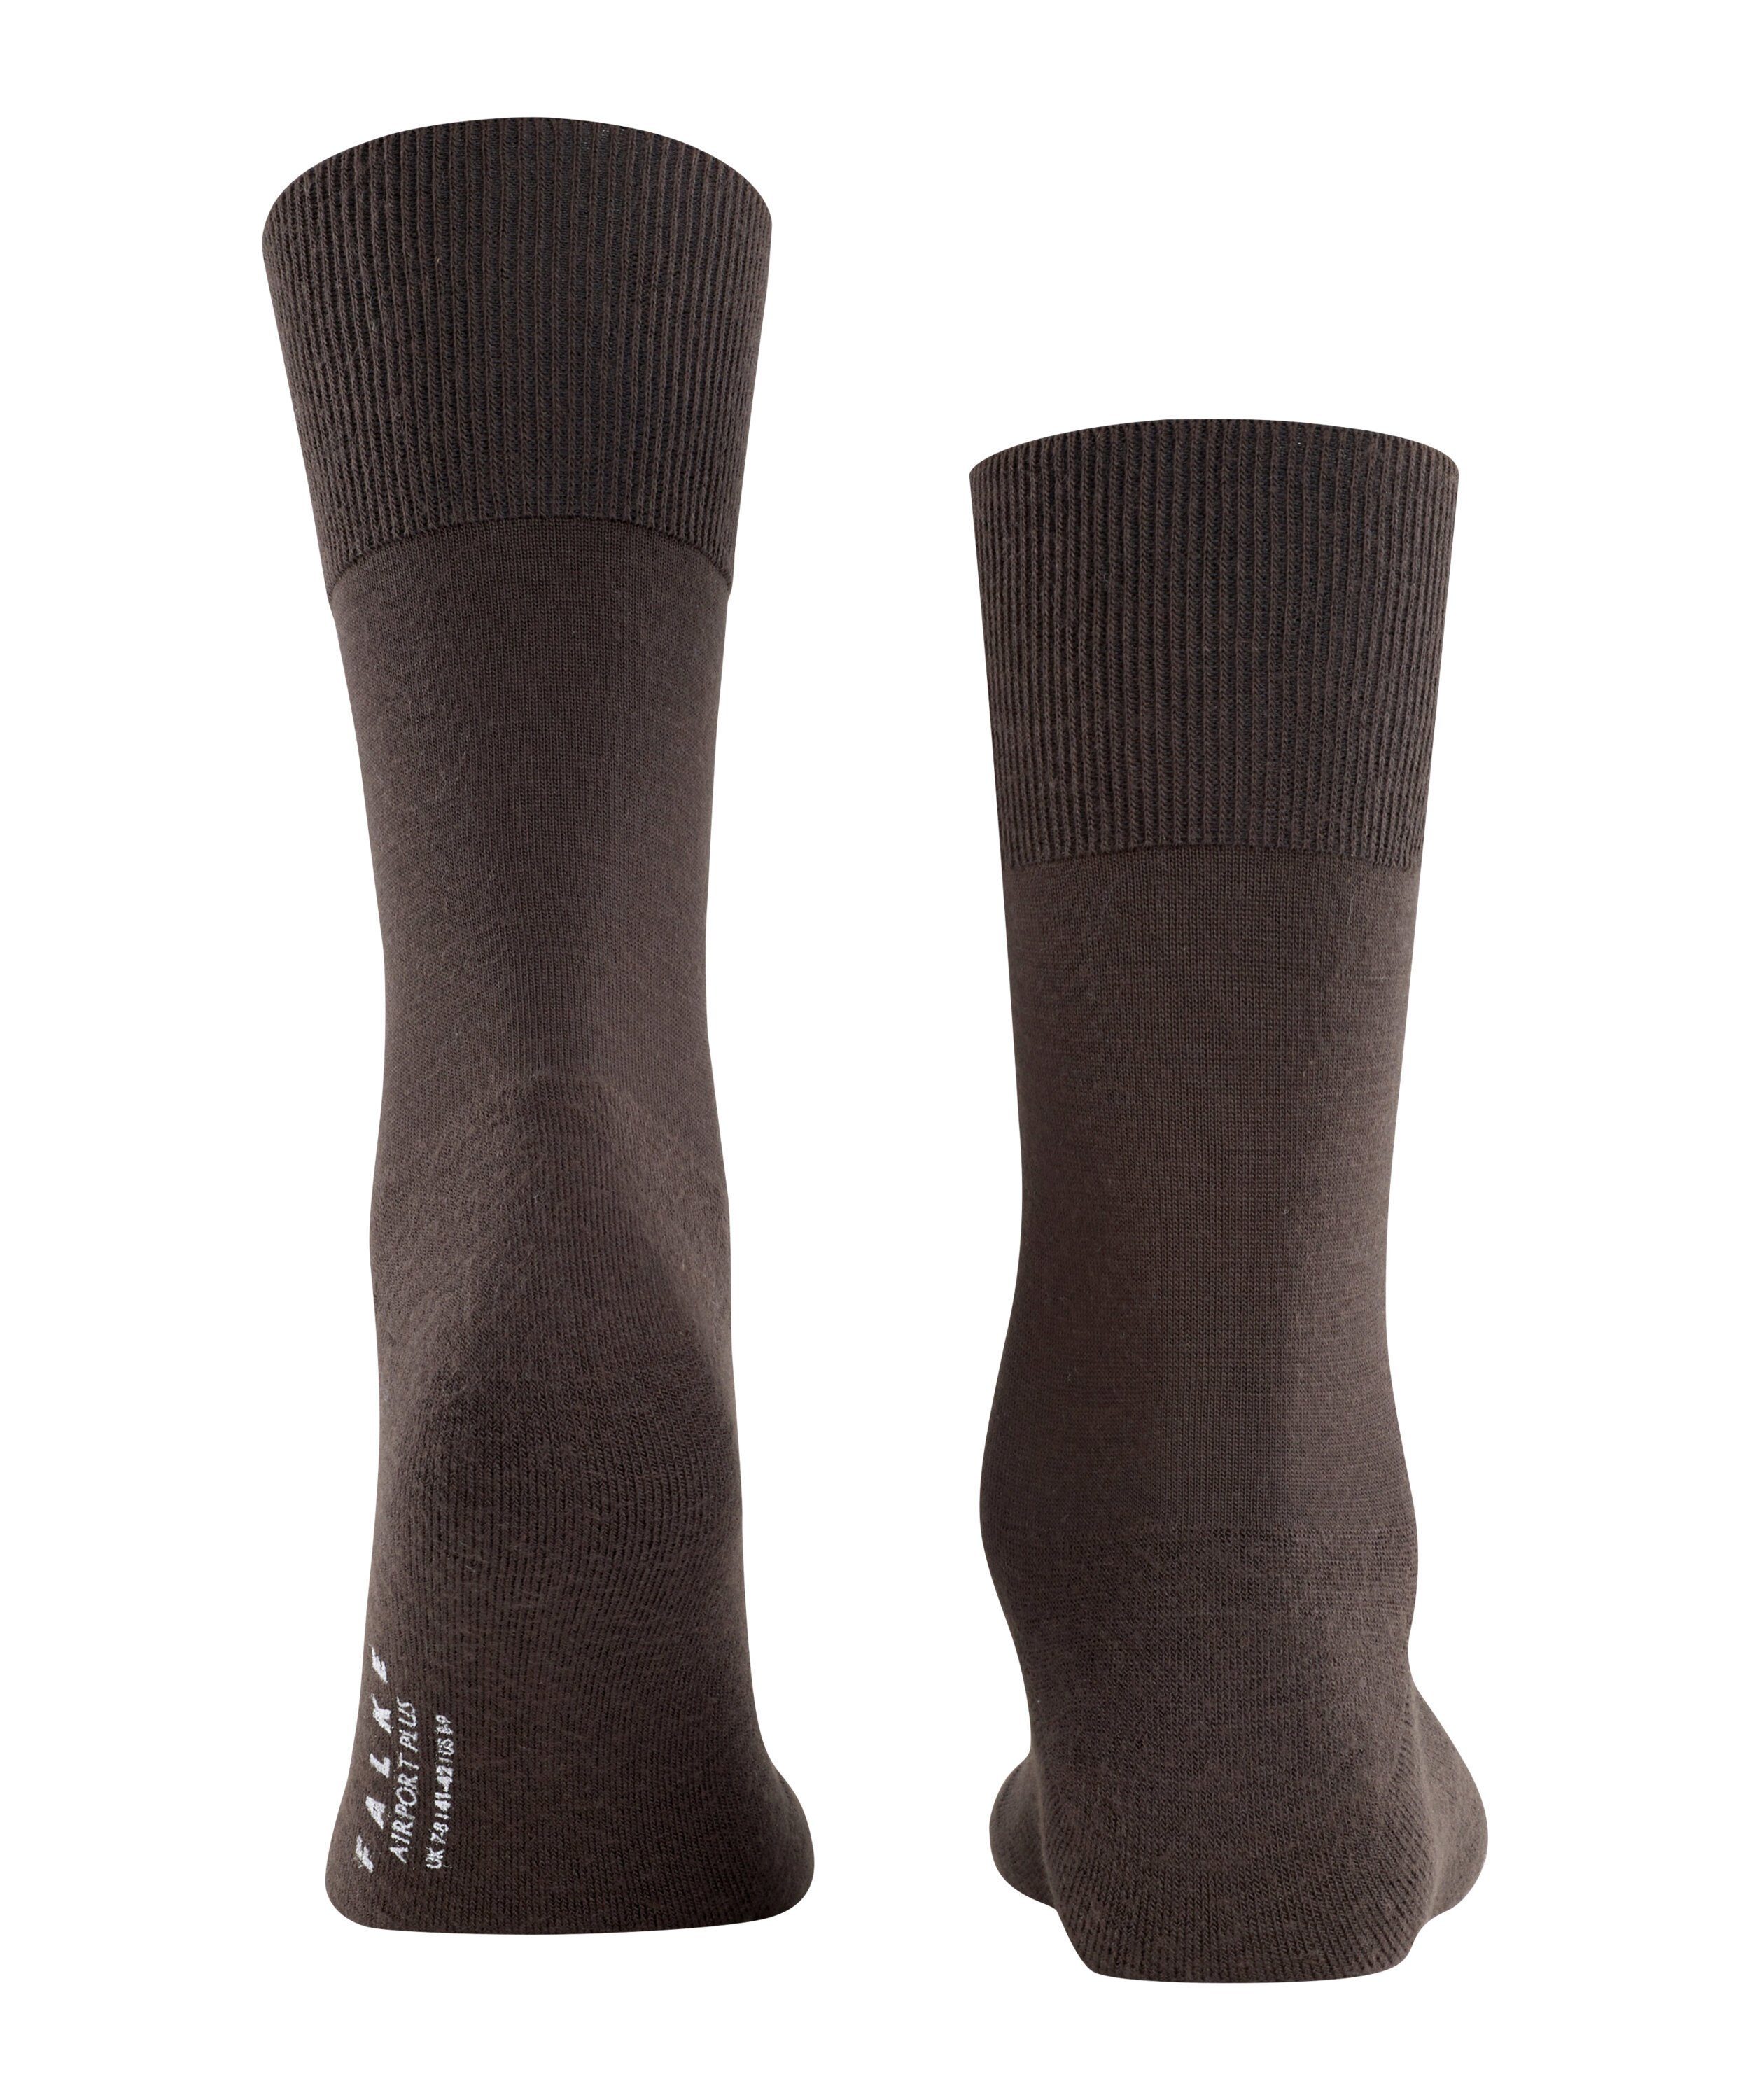 (5930) Airport Plus FALKE (1-Paar) Socken brown